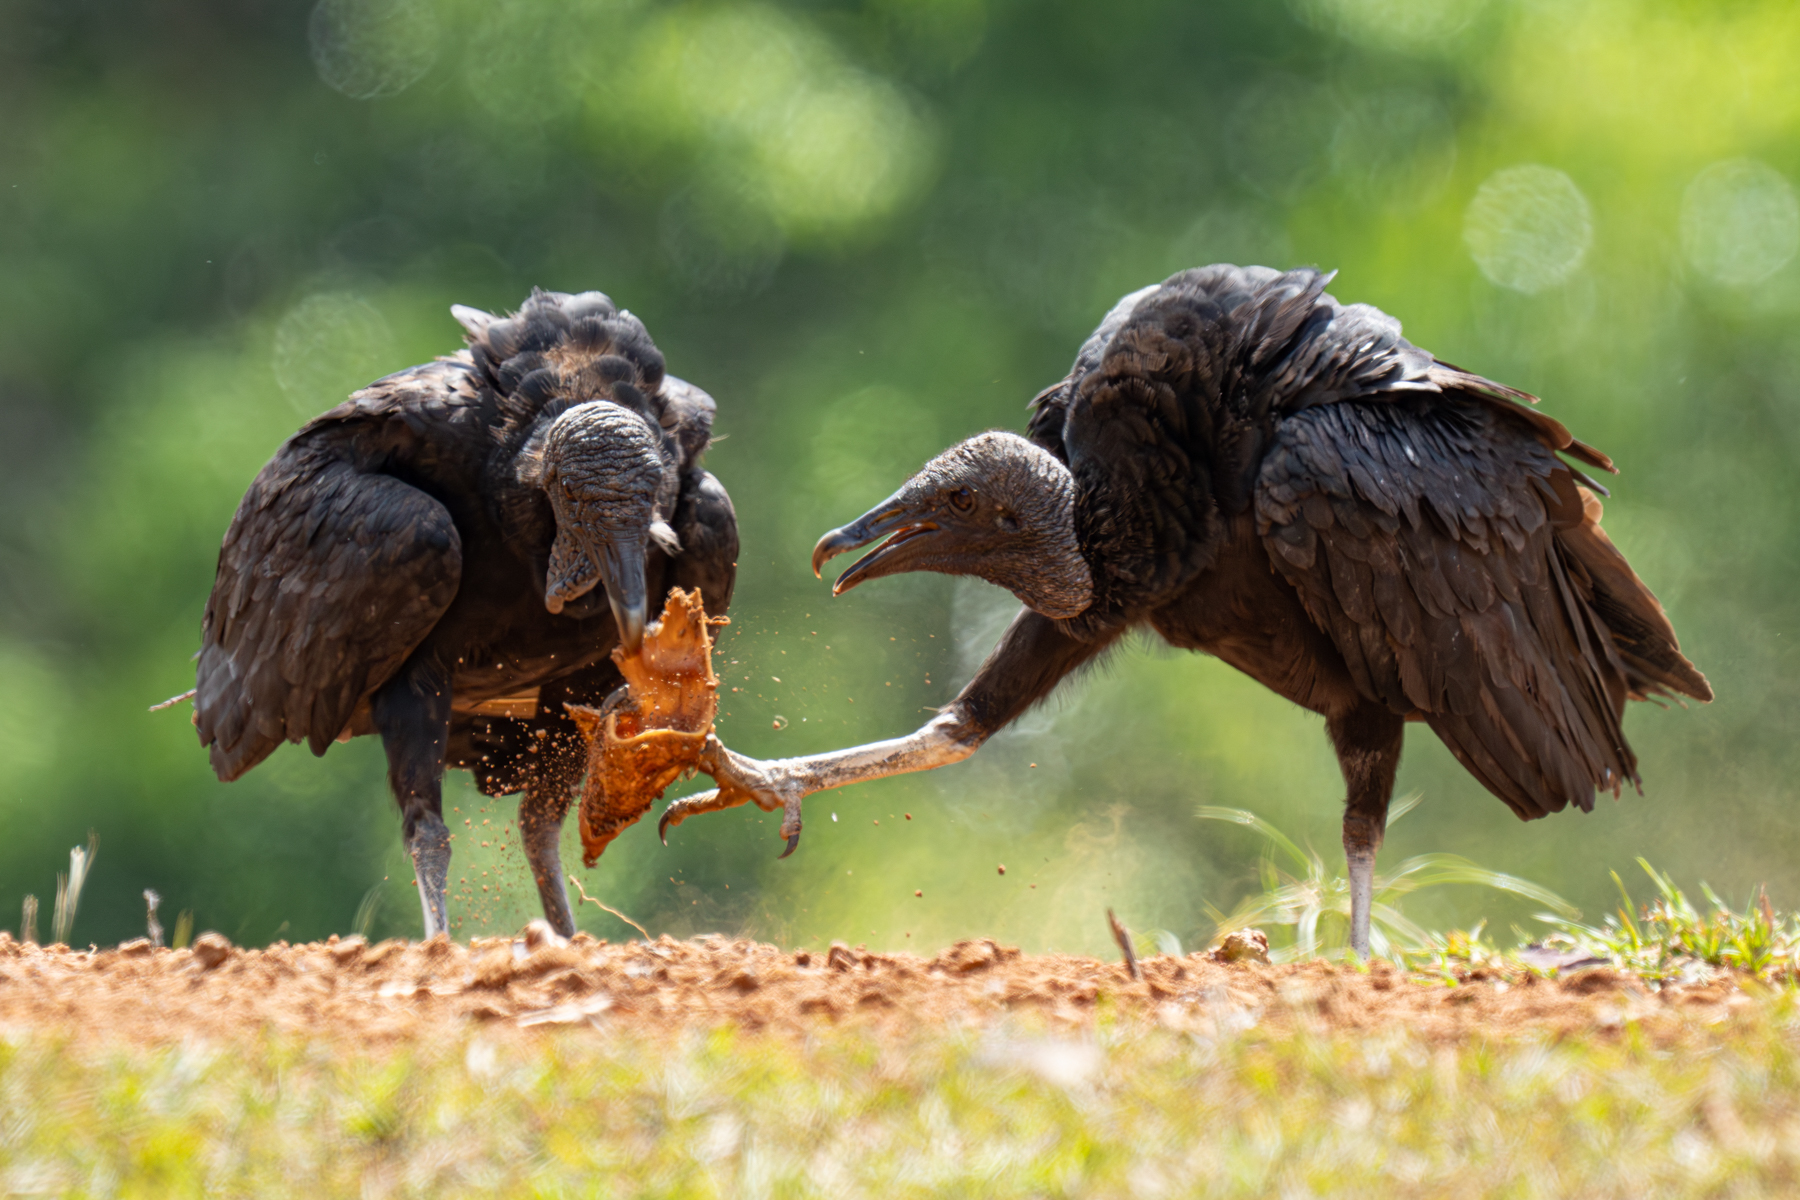 Black Vultures fighting over carrion (image by Inger Vandyke)